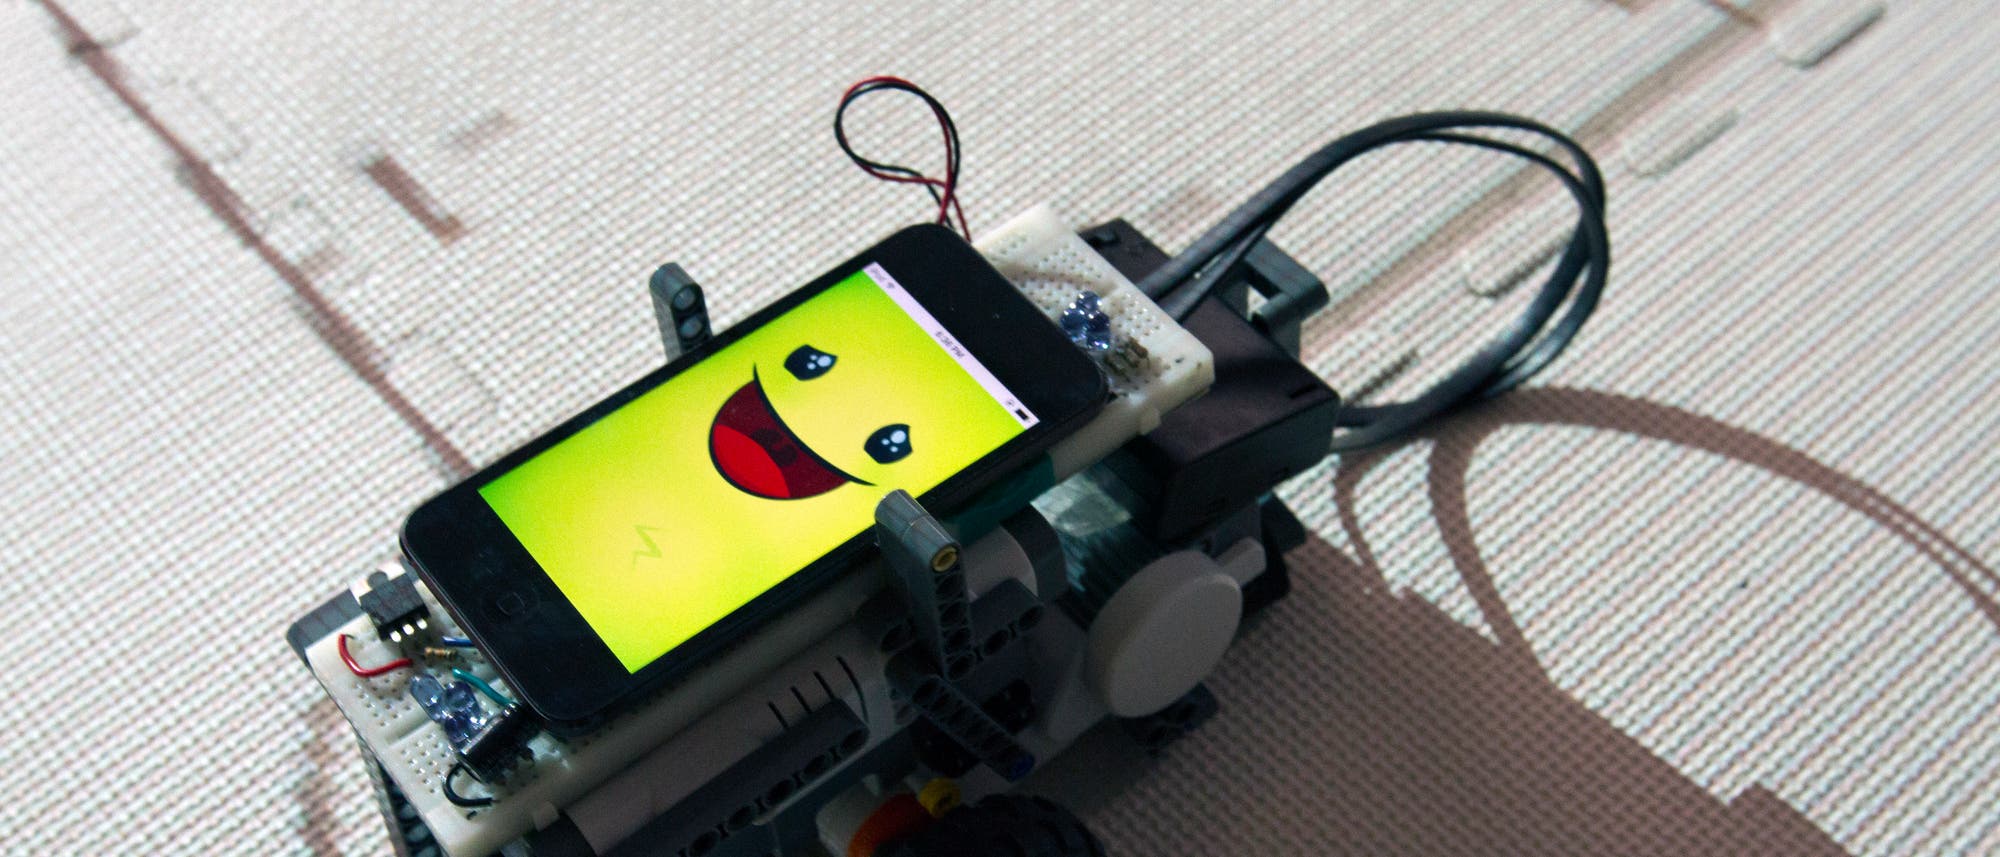 Mathe-Roboter Quinn zeigt ein Lächeln auf seinem Bildschirm